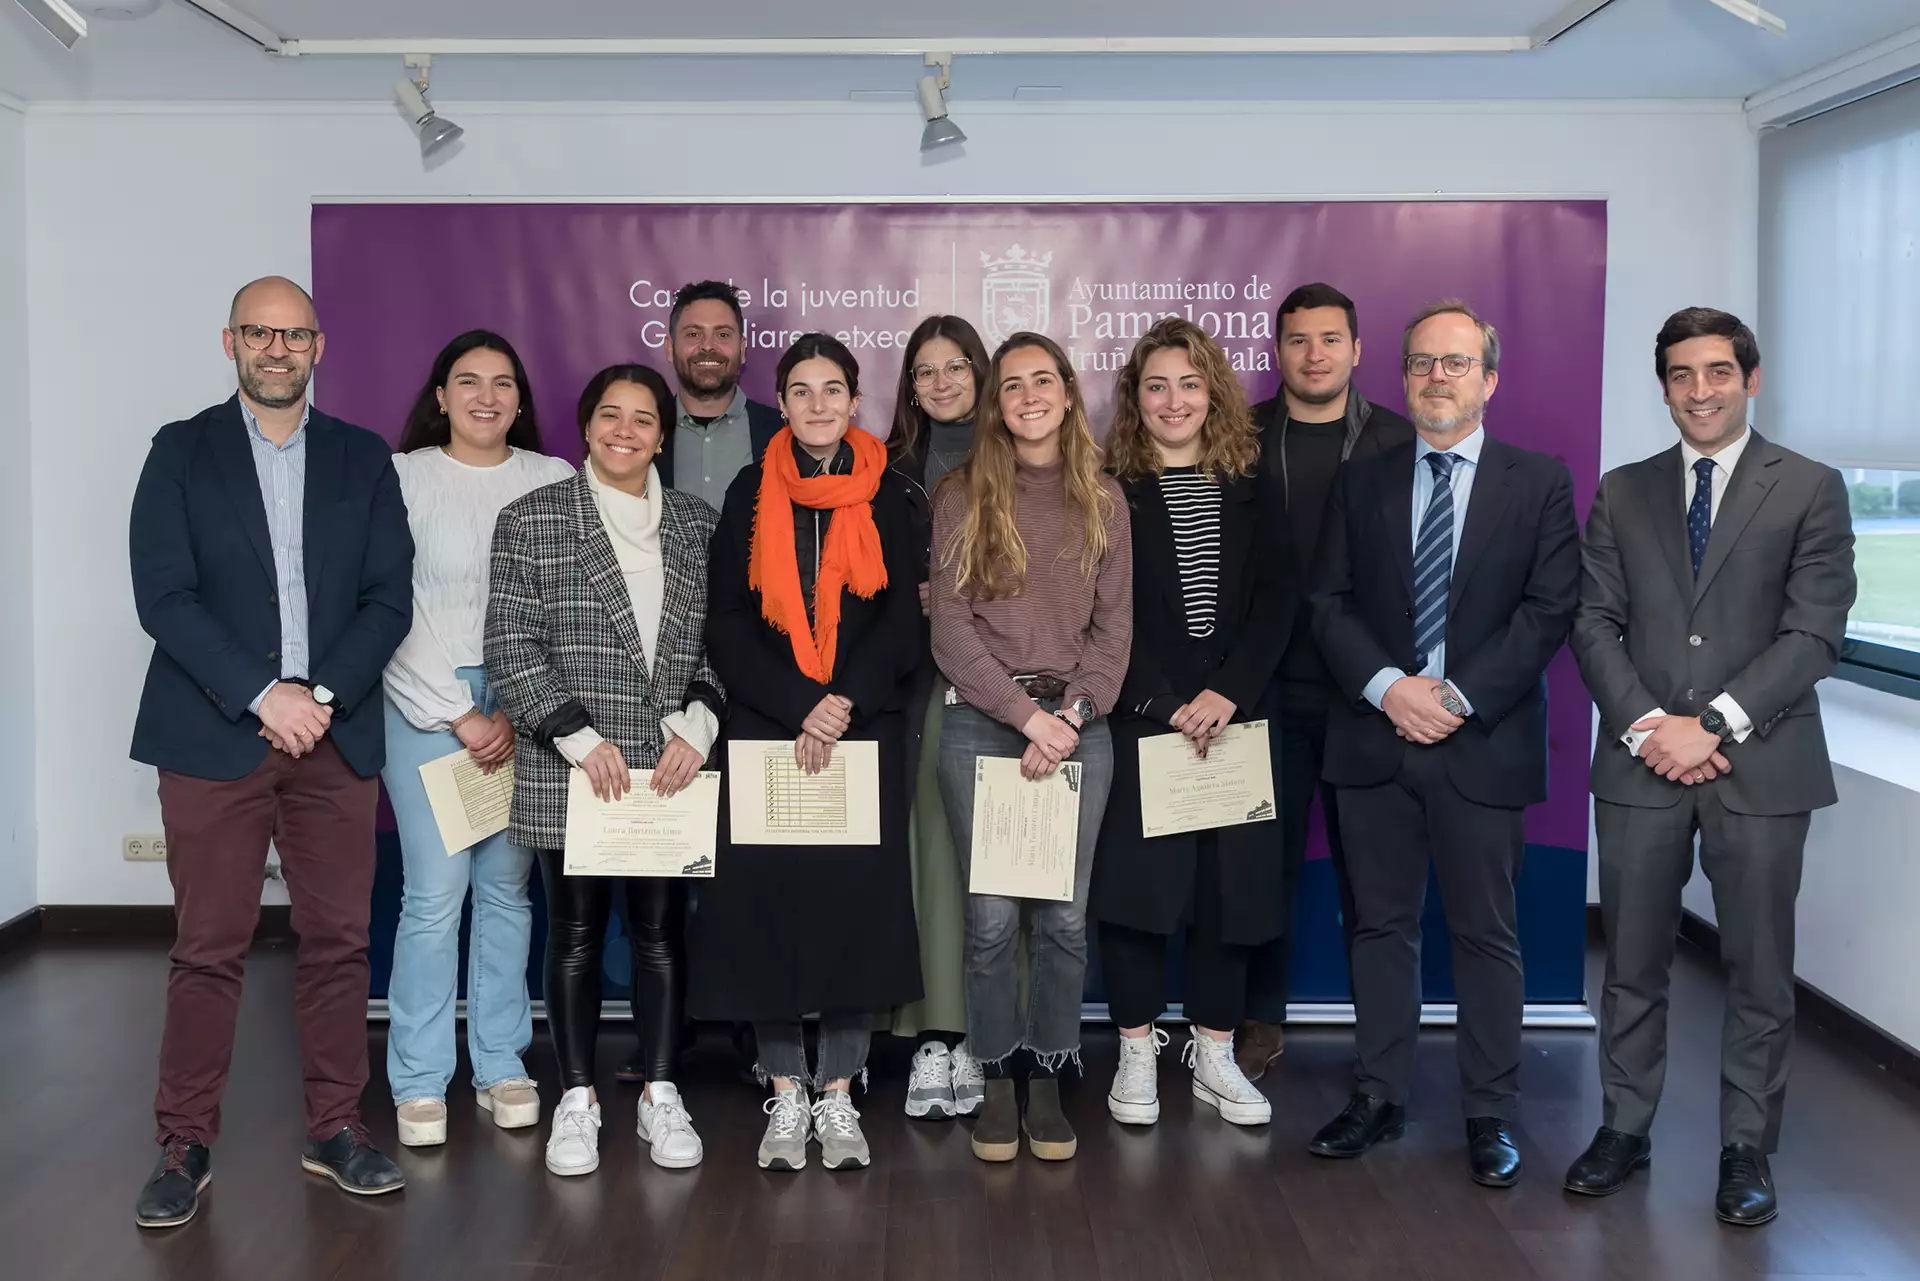 30 años de asesoría jurídica especializada para los jóvenes de Pamplona: alumnado de grado y máster recibe sus diplomas de prácticas en la Casa de la Juventud